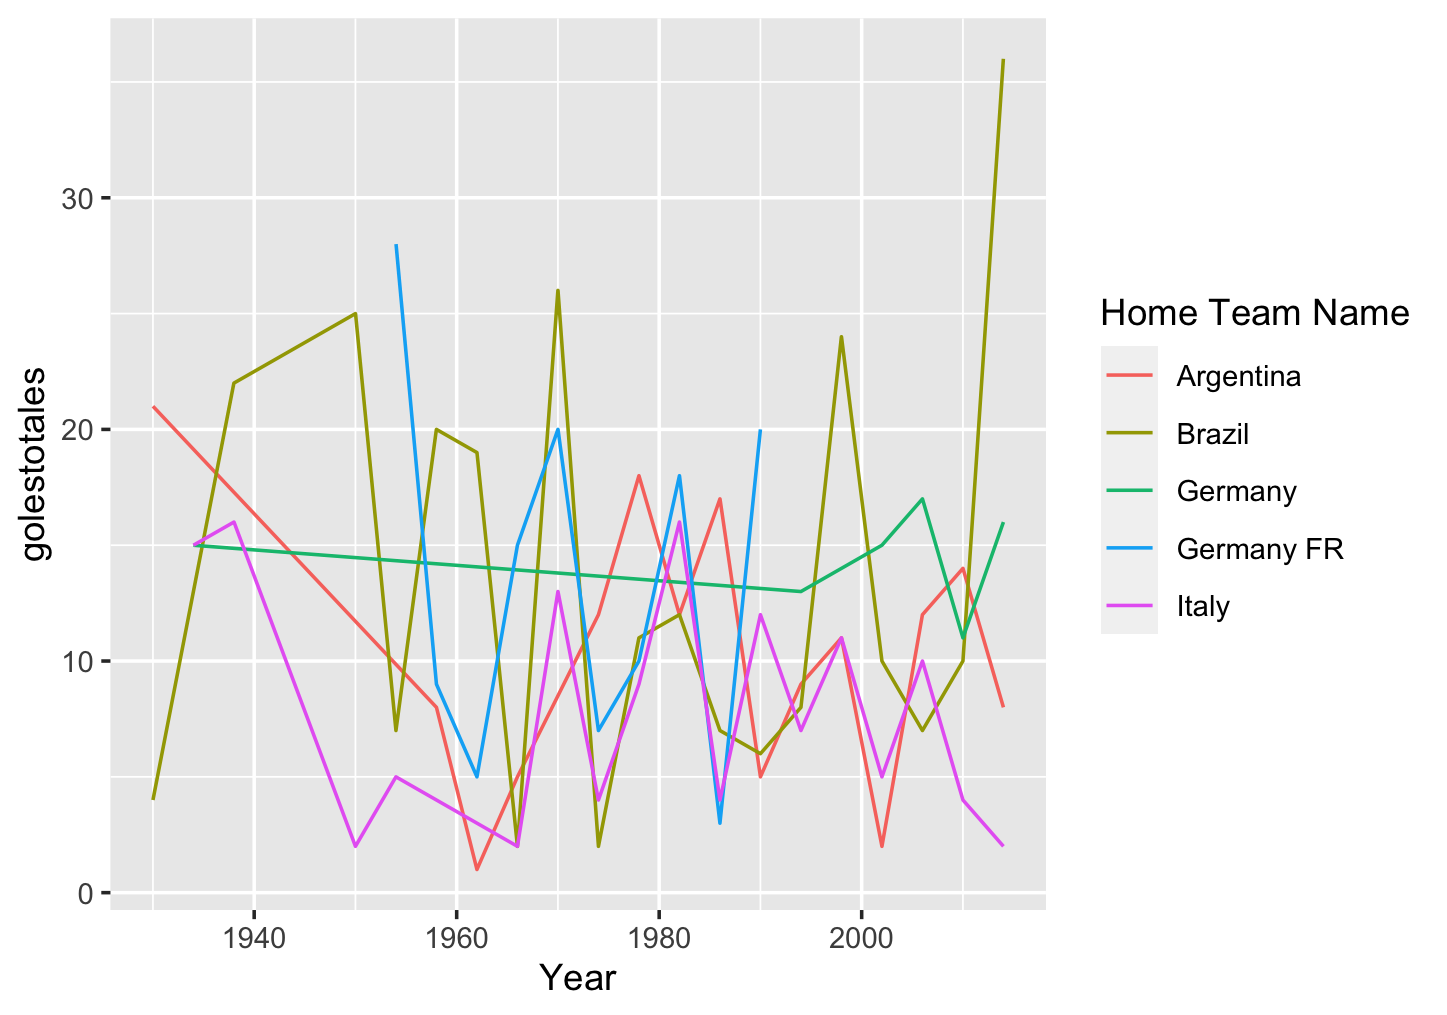 Grafico con cinco lineas de diferente color que presentan la evolucion de la cantidad de goles realizadosa traves del tiempo en cada copa del mundo por cada pais en el conjunto de datos.